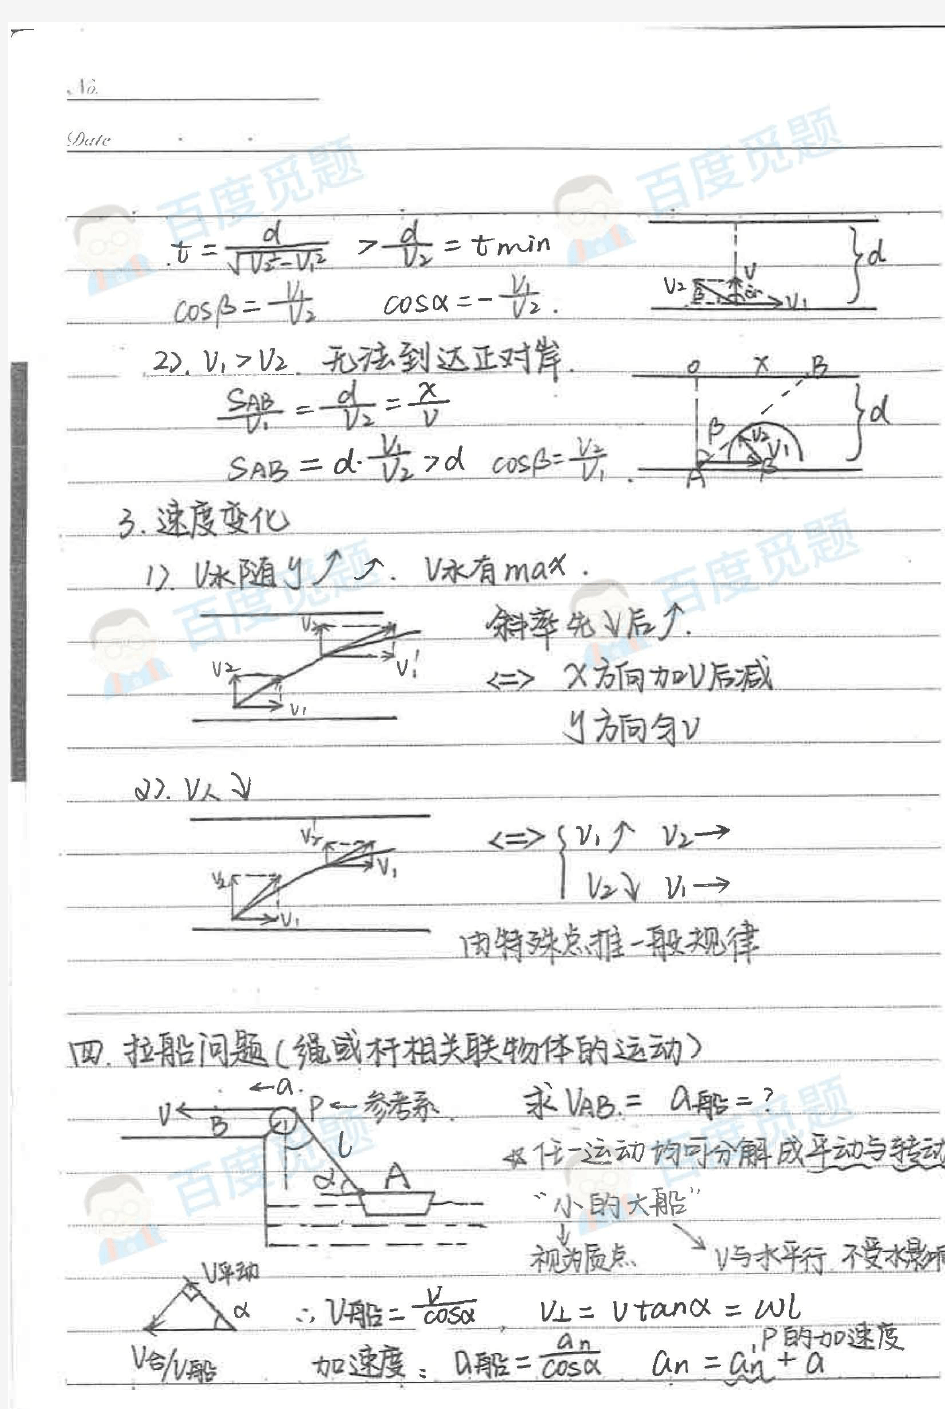 重庆南开中学理科学霸高中物理笔记_曲线运动_2015高考状元笔记